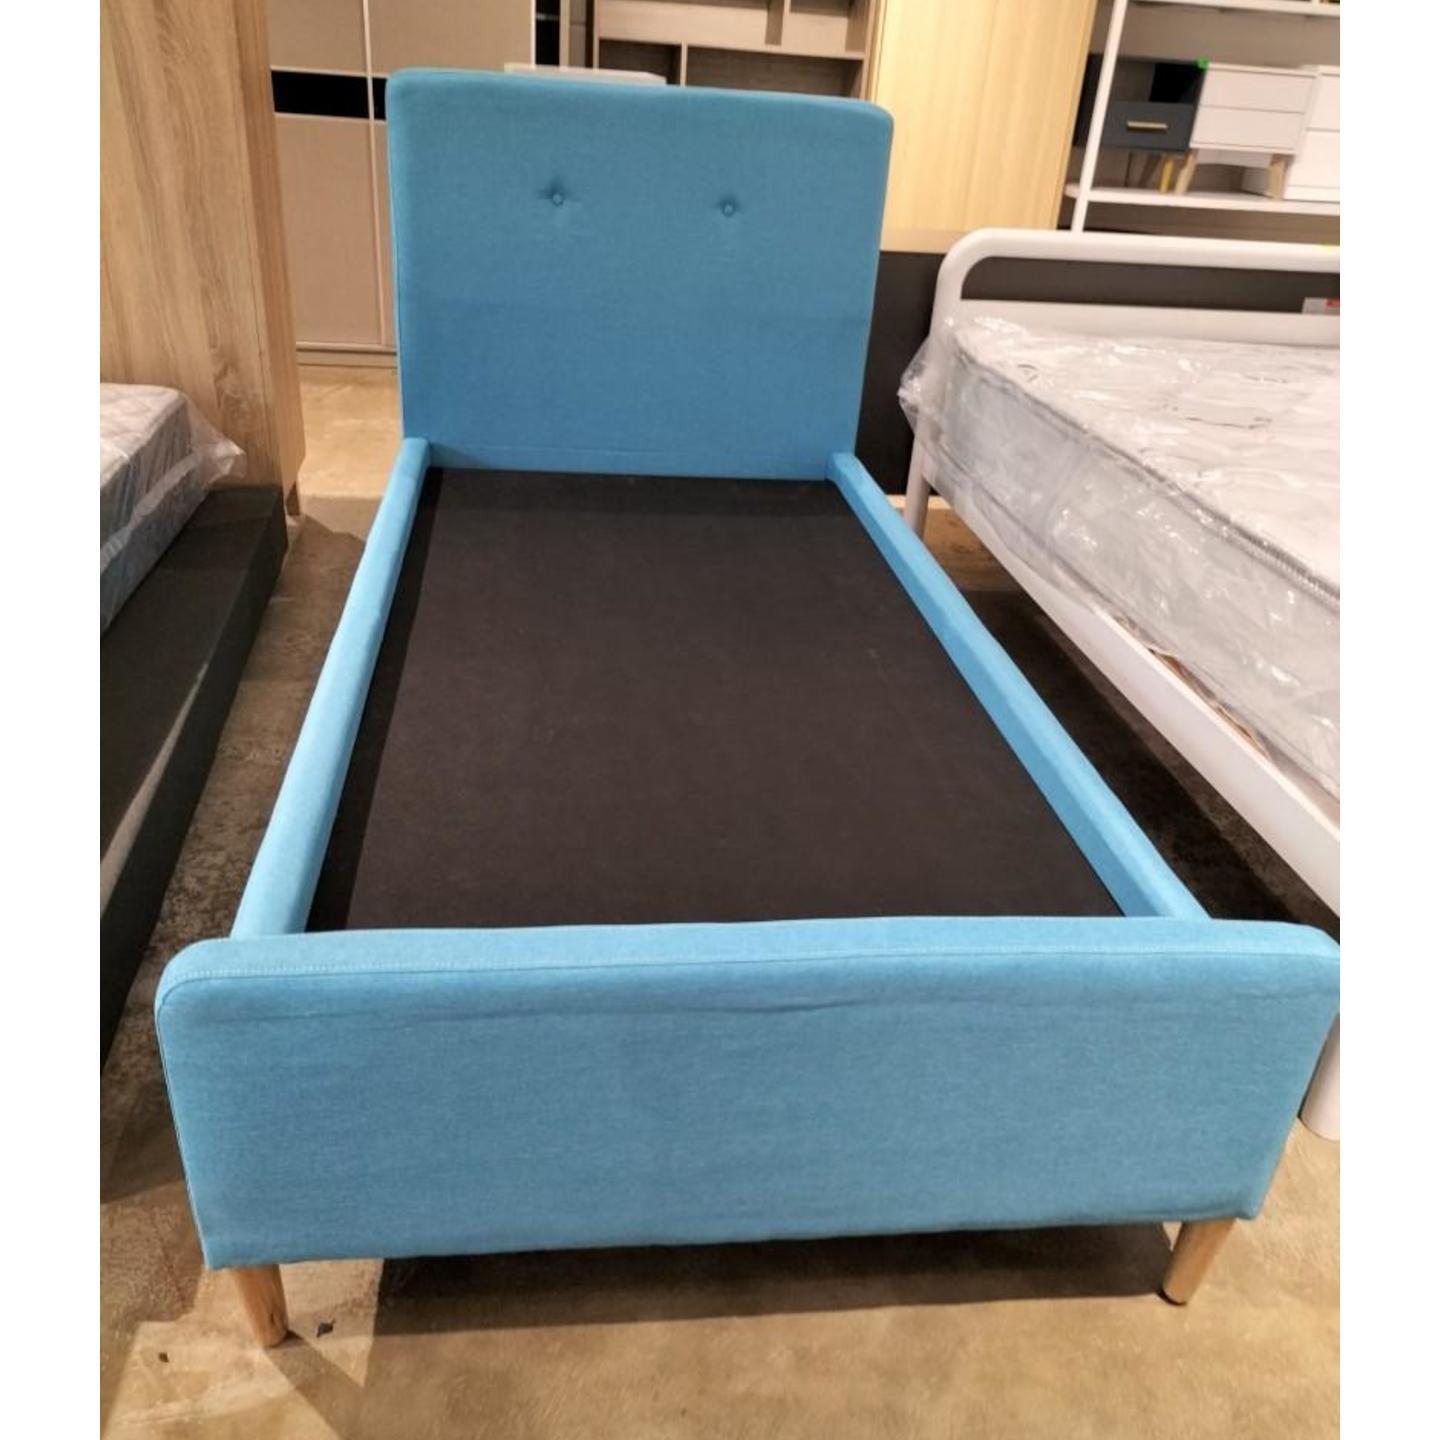 REKESER Single Size Bed Frame in DENIM BLUE FABRIC